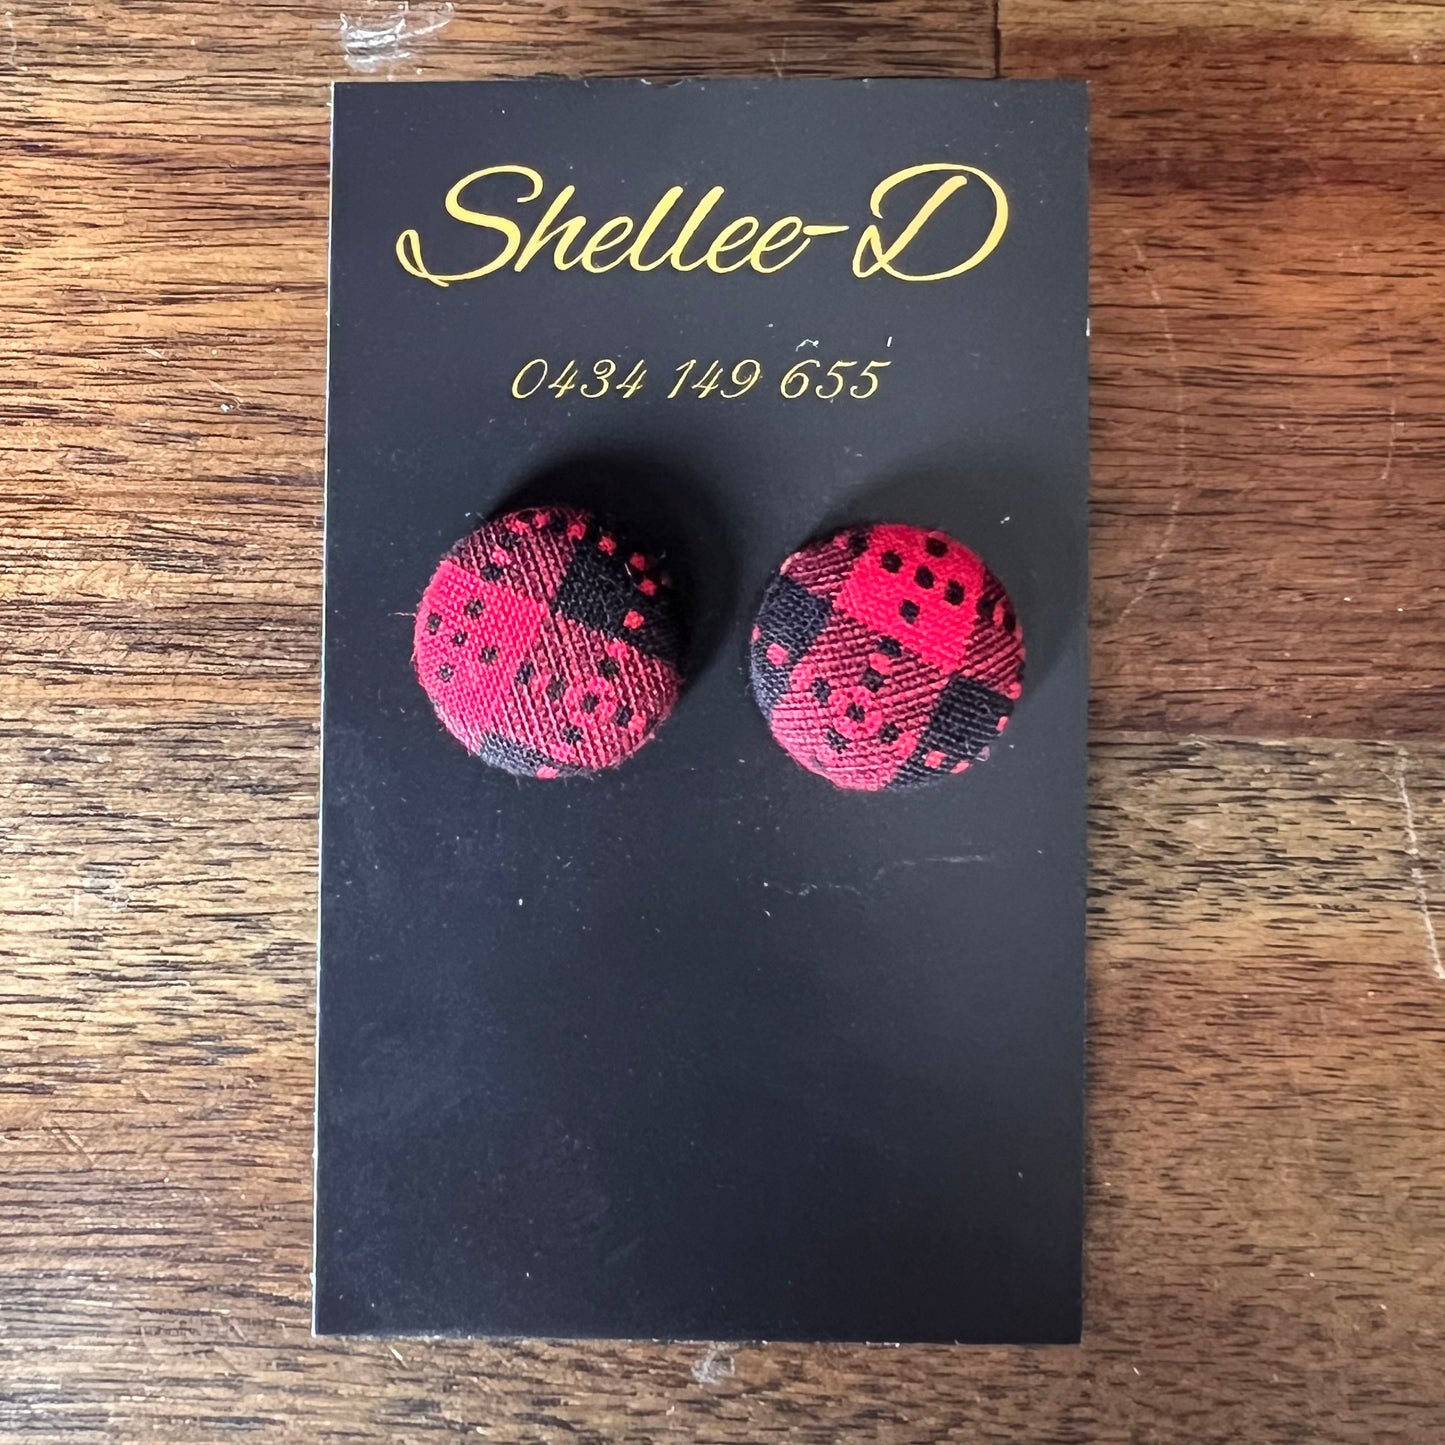 Earrings by Shellee-D - Black & Red Tartan